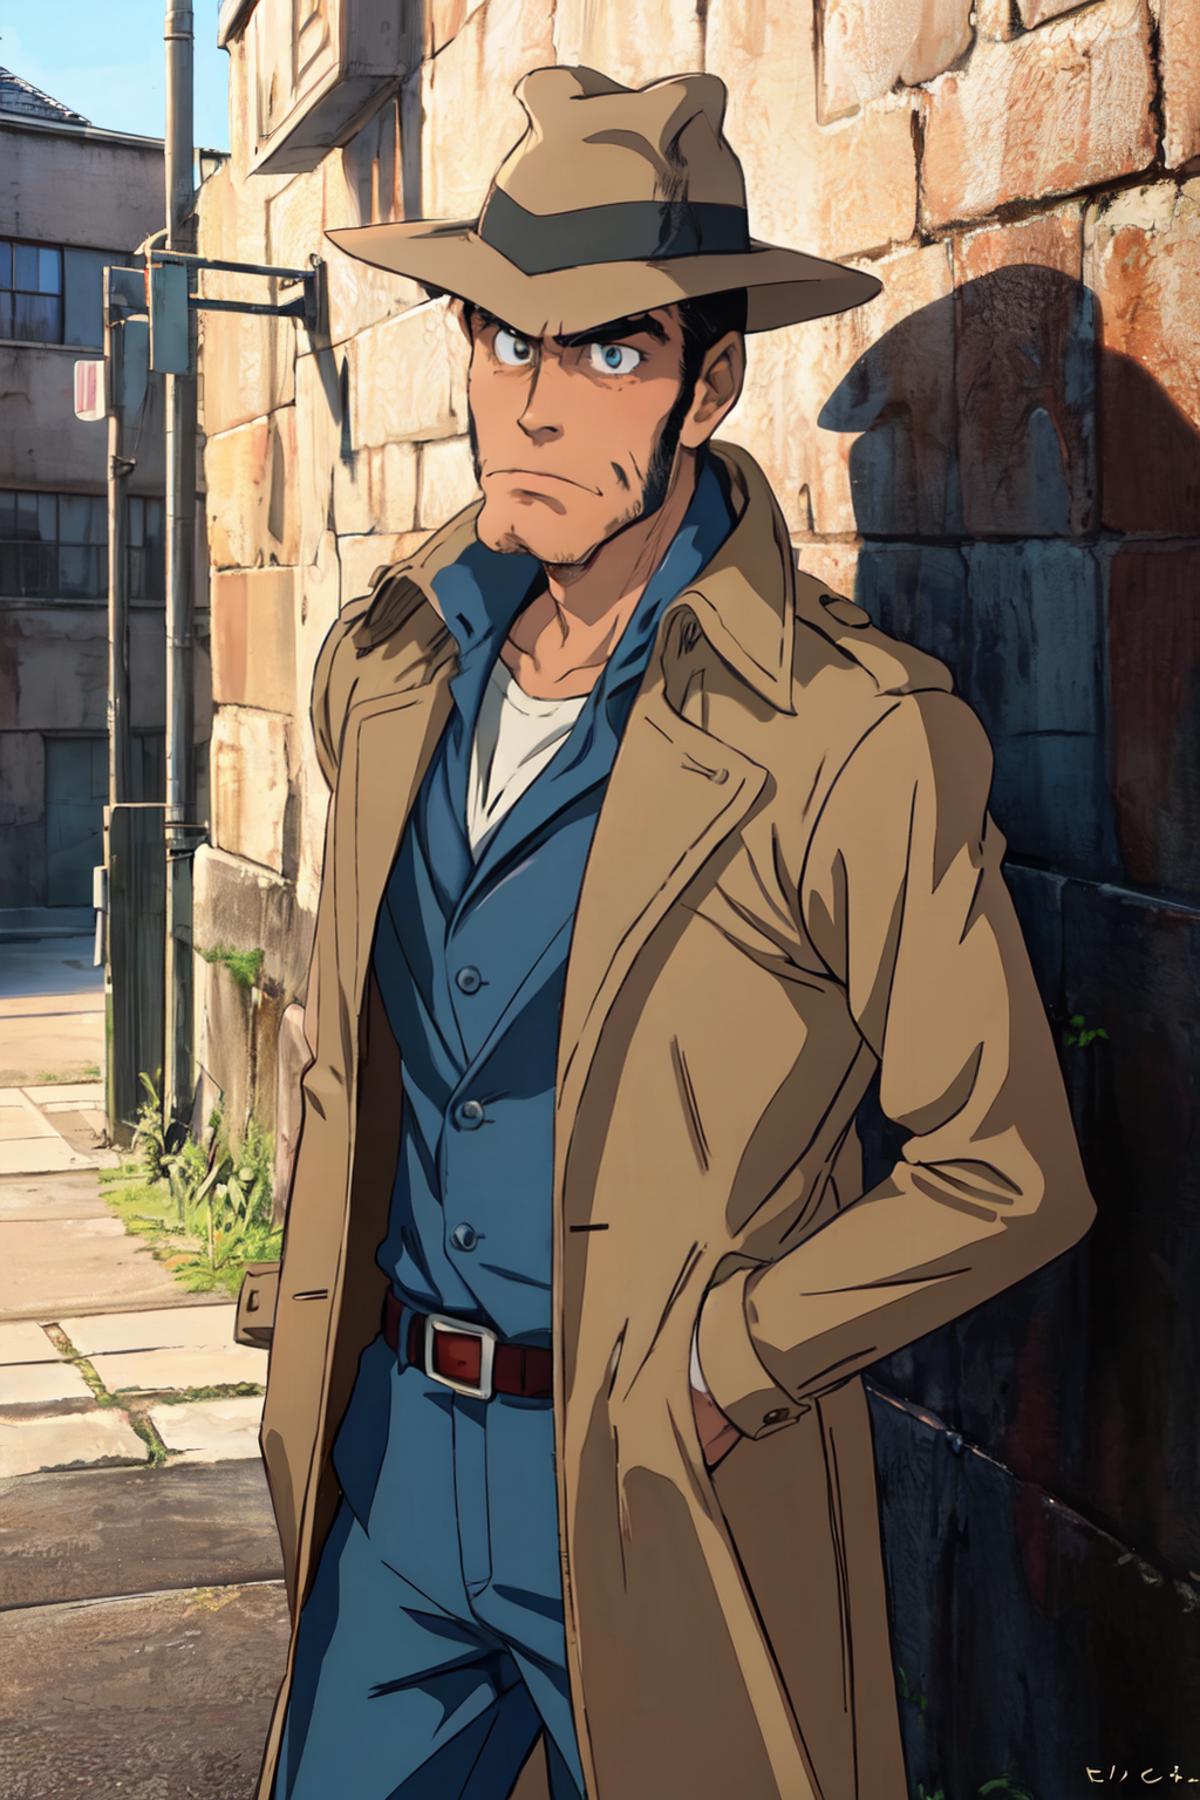 Inspector Zenigata - Lupin III image by kokurine